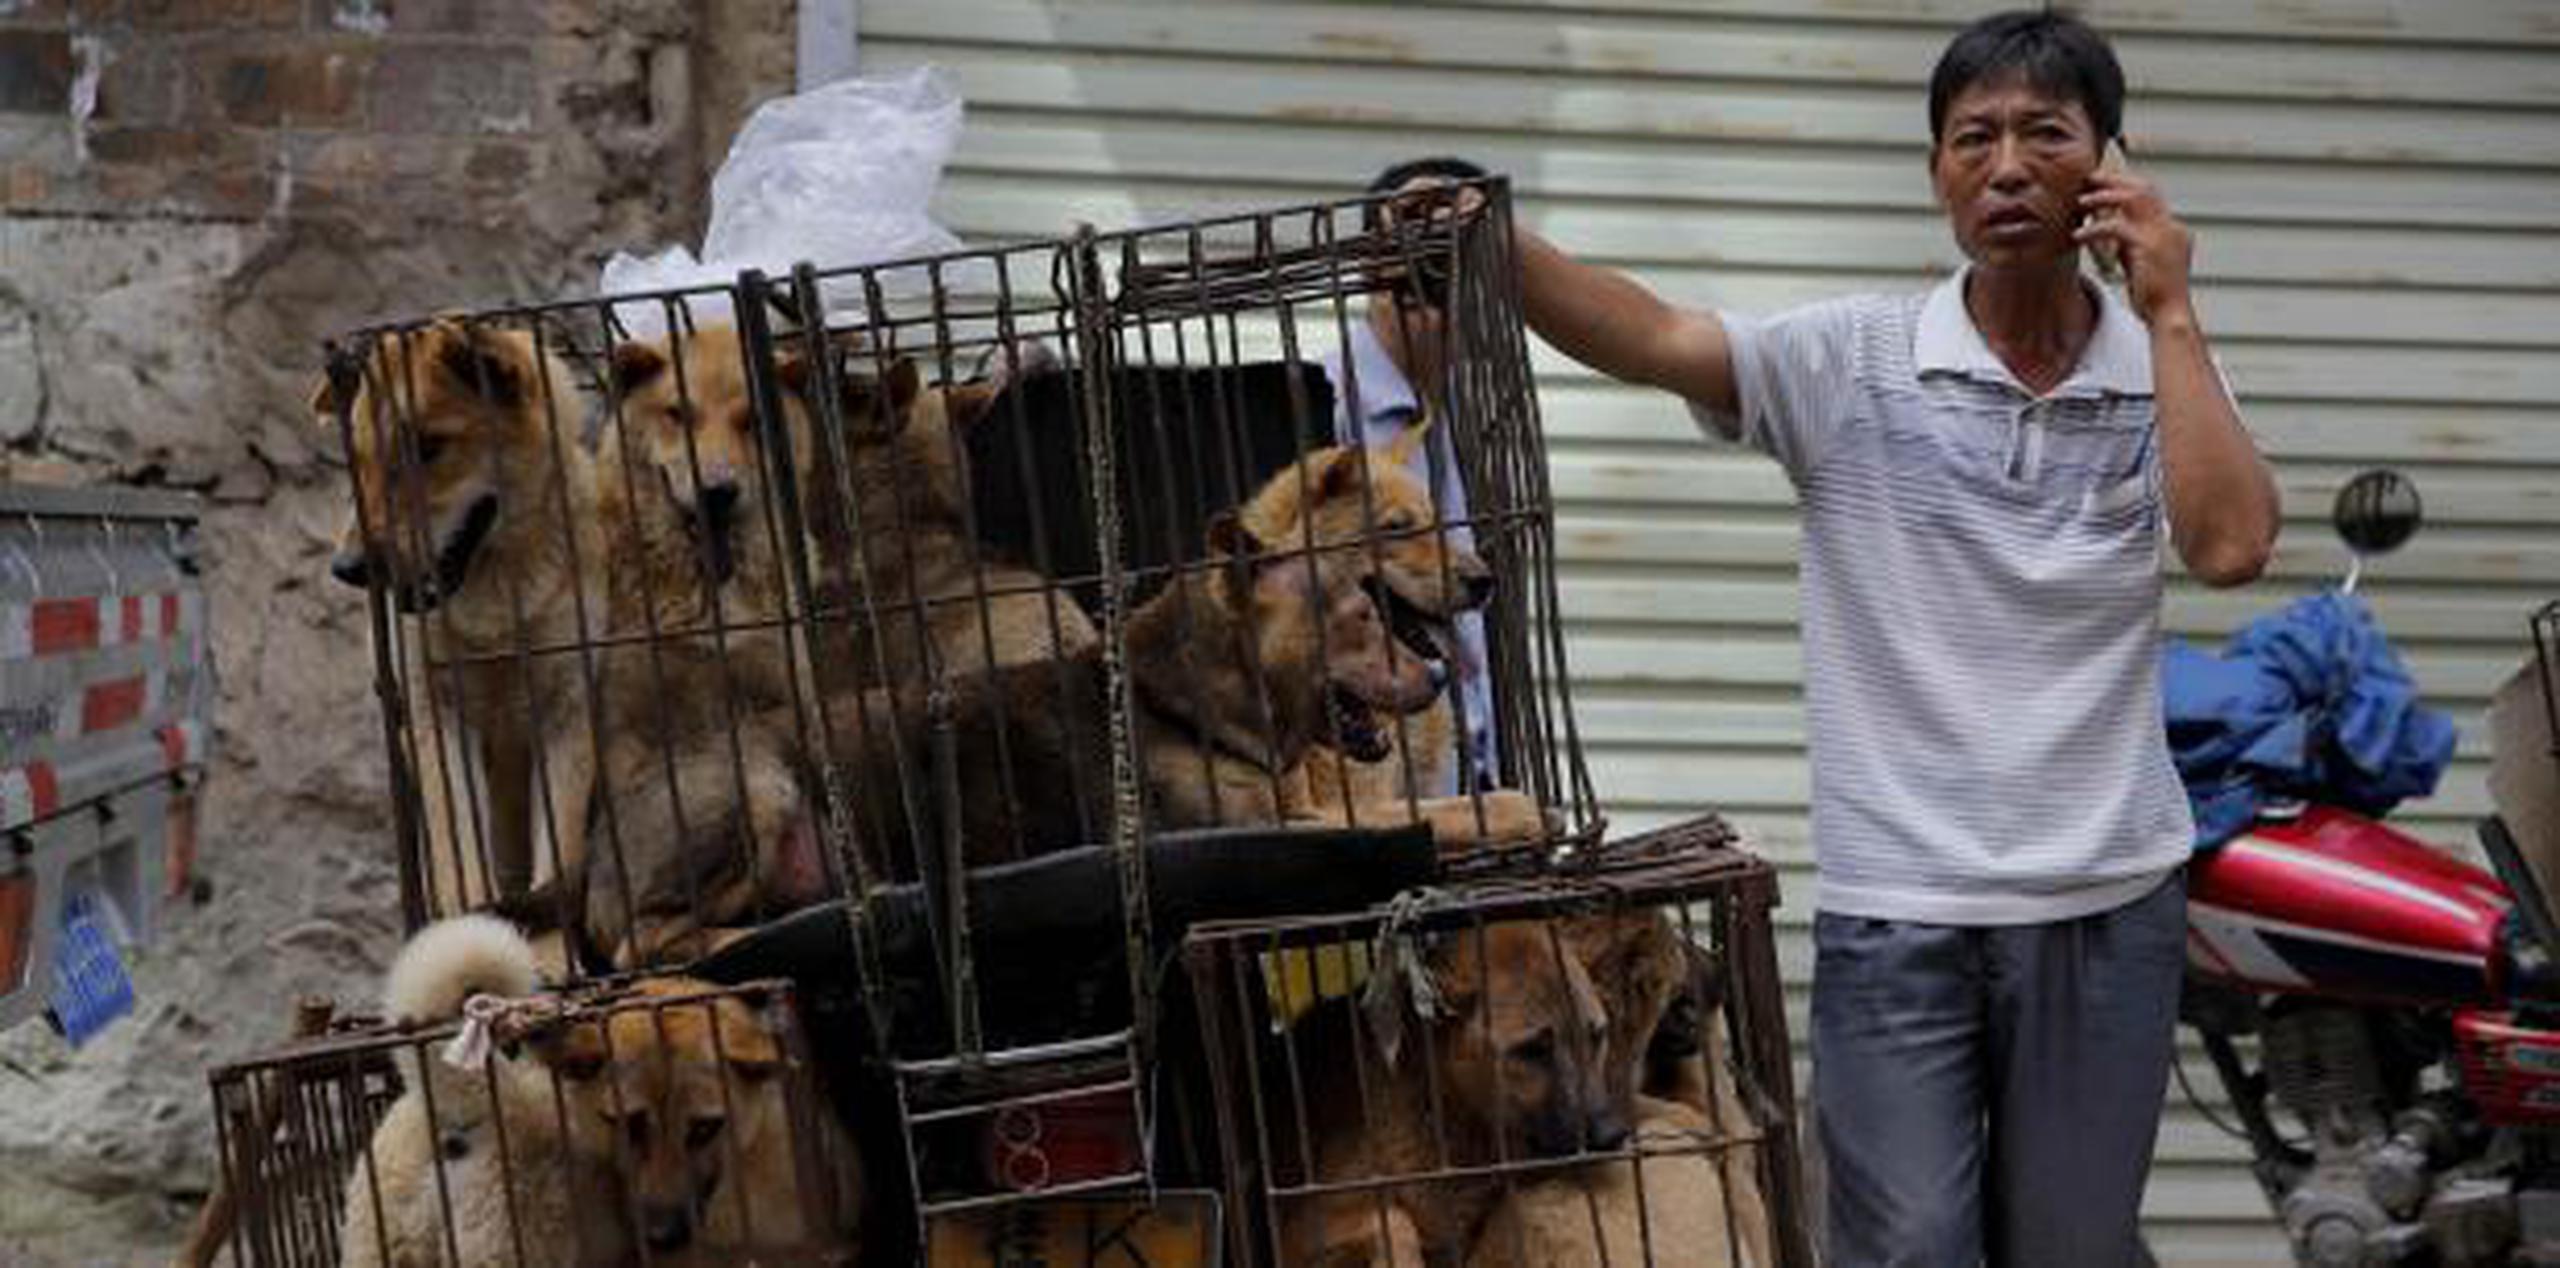 En el pasado, unos 10,000 perros solían ser sacrificados durante el festival, aunque en los últimos años la cifra se ha reducido hasta el millar, según datos de la organización. (Archivo)

